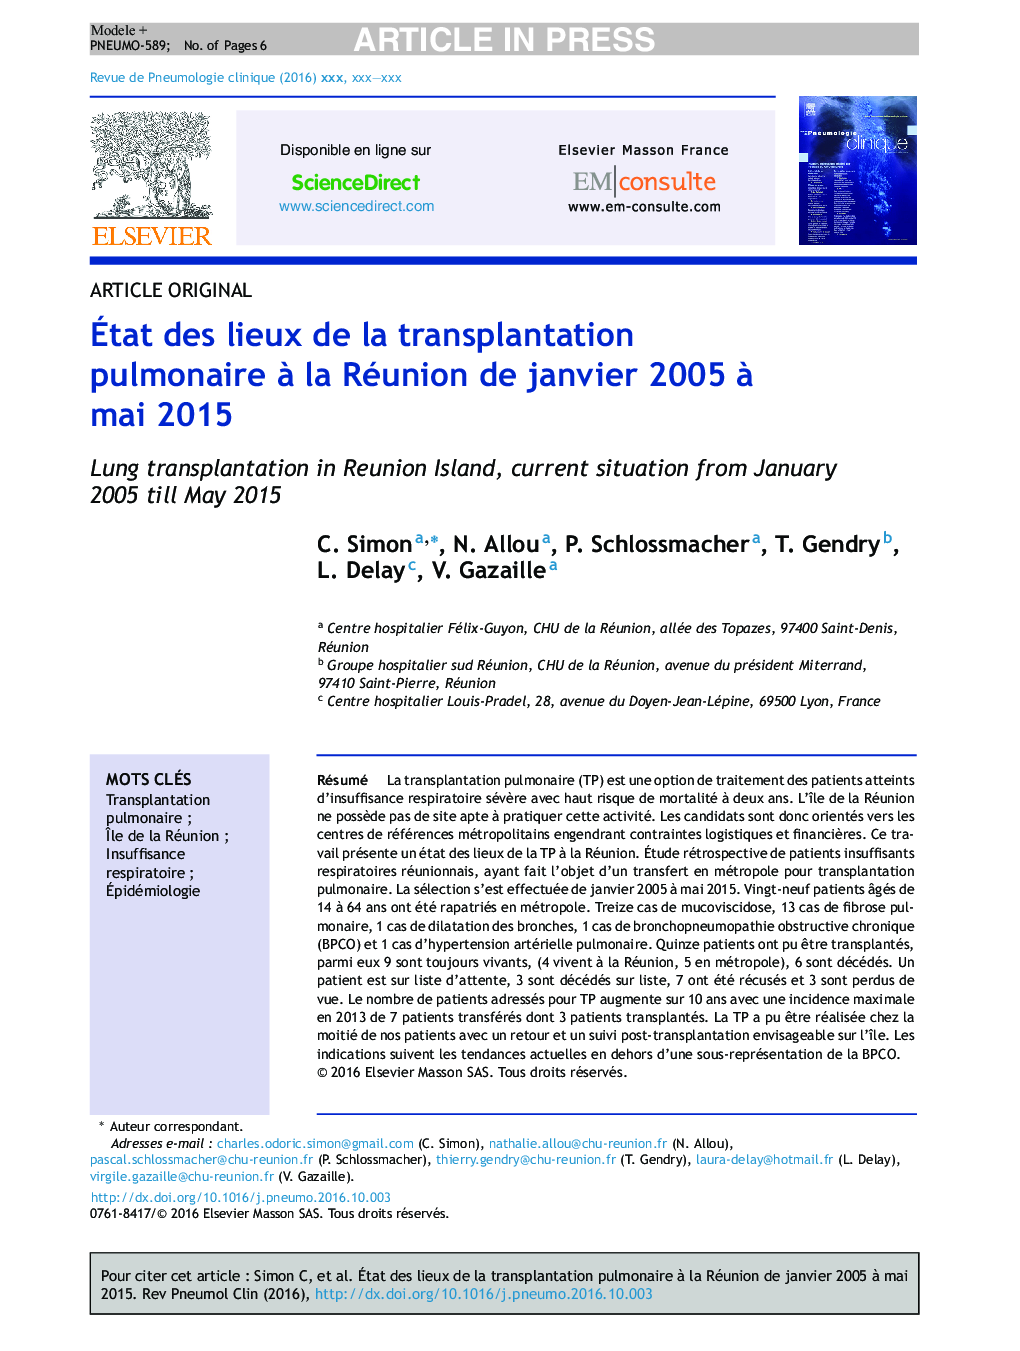 Ãtat des lieux de la transplantation pulmonaire Ã  la Réunion de janvier 2005Â Ã  mai 2015